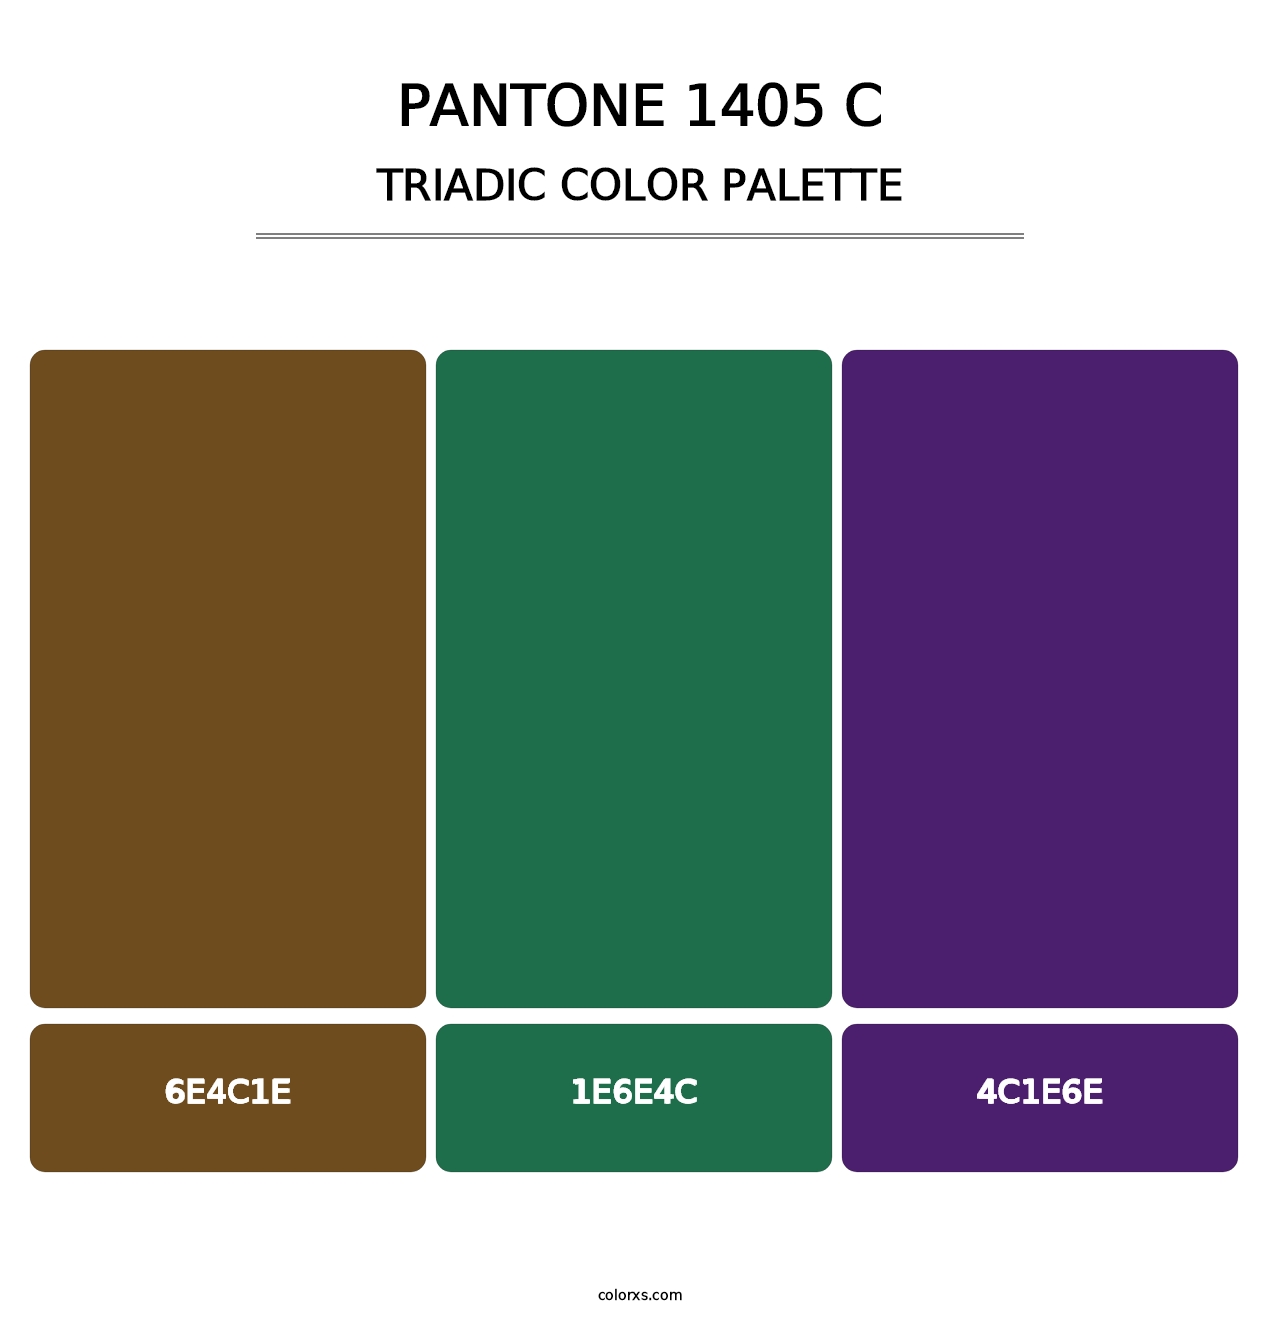 PANTONE 1405 C - Triadic Color Palette